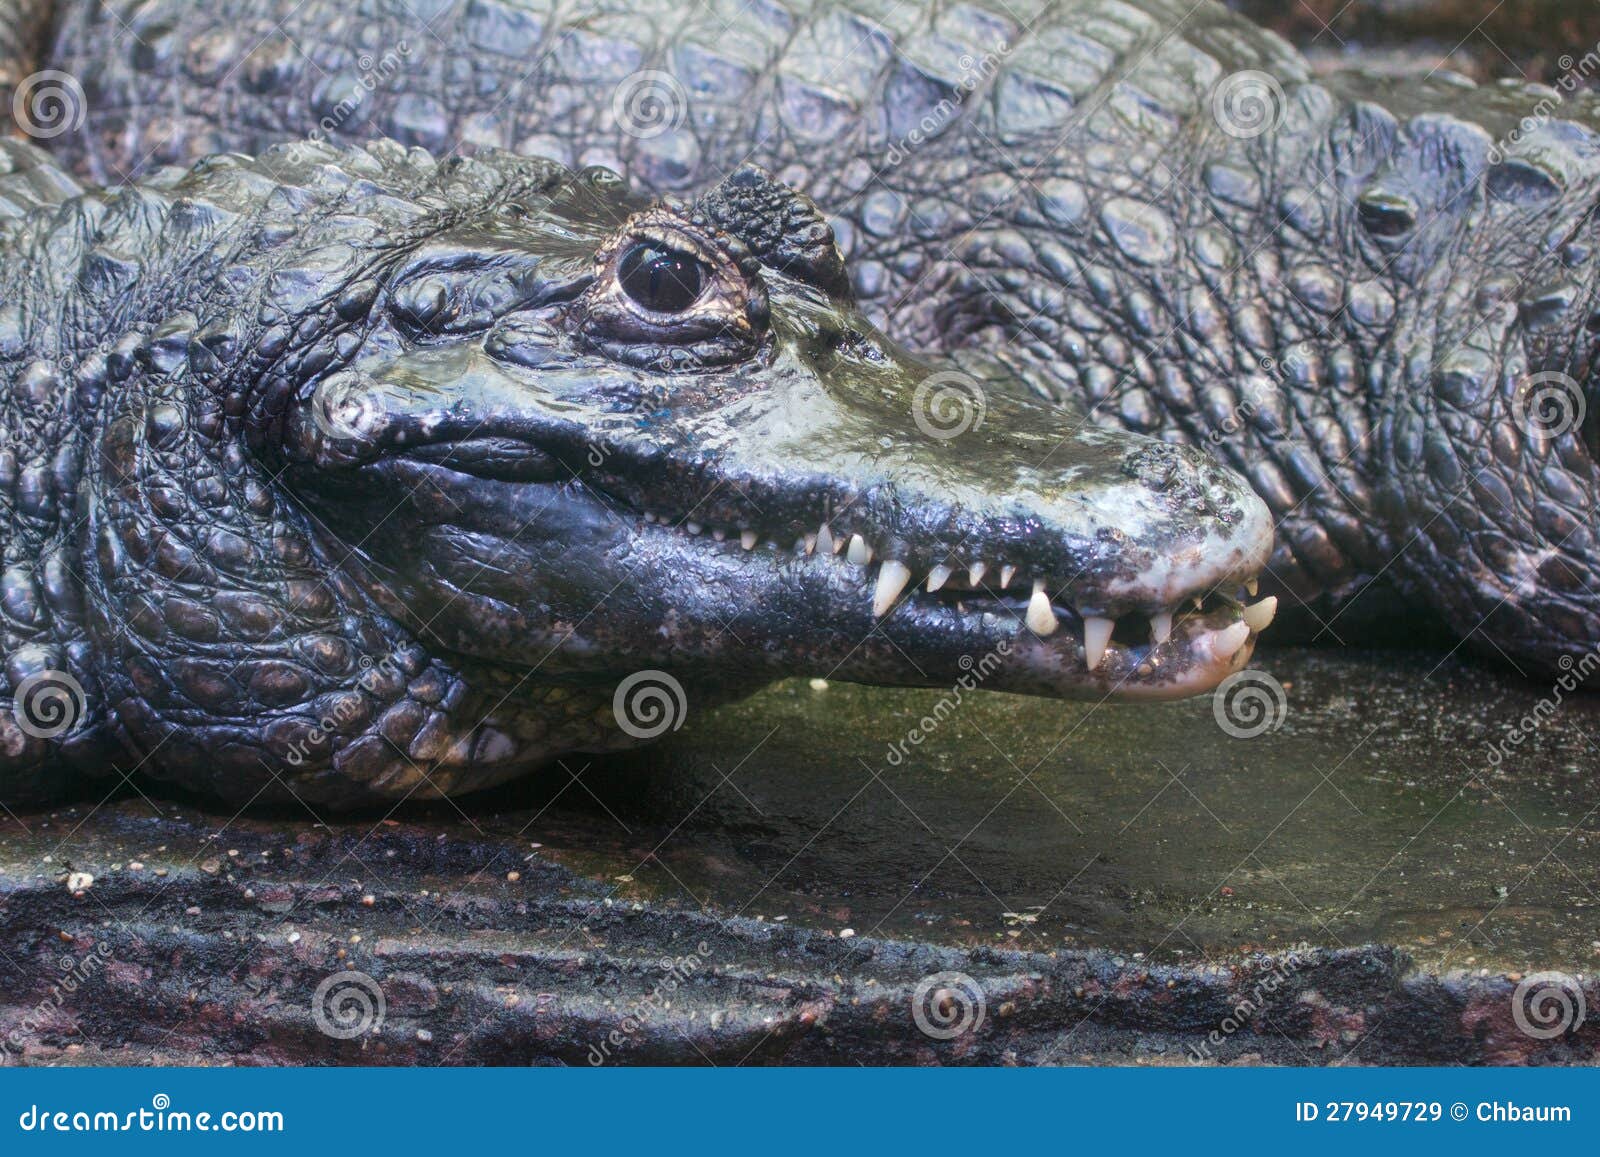 Crocodile   wikipedia